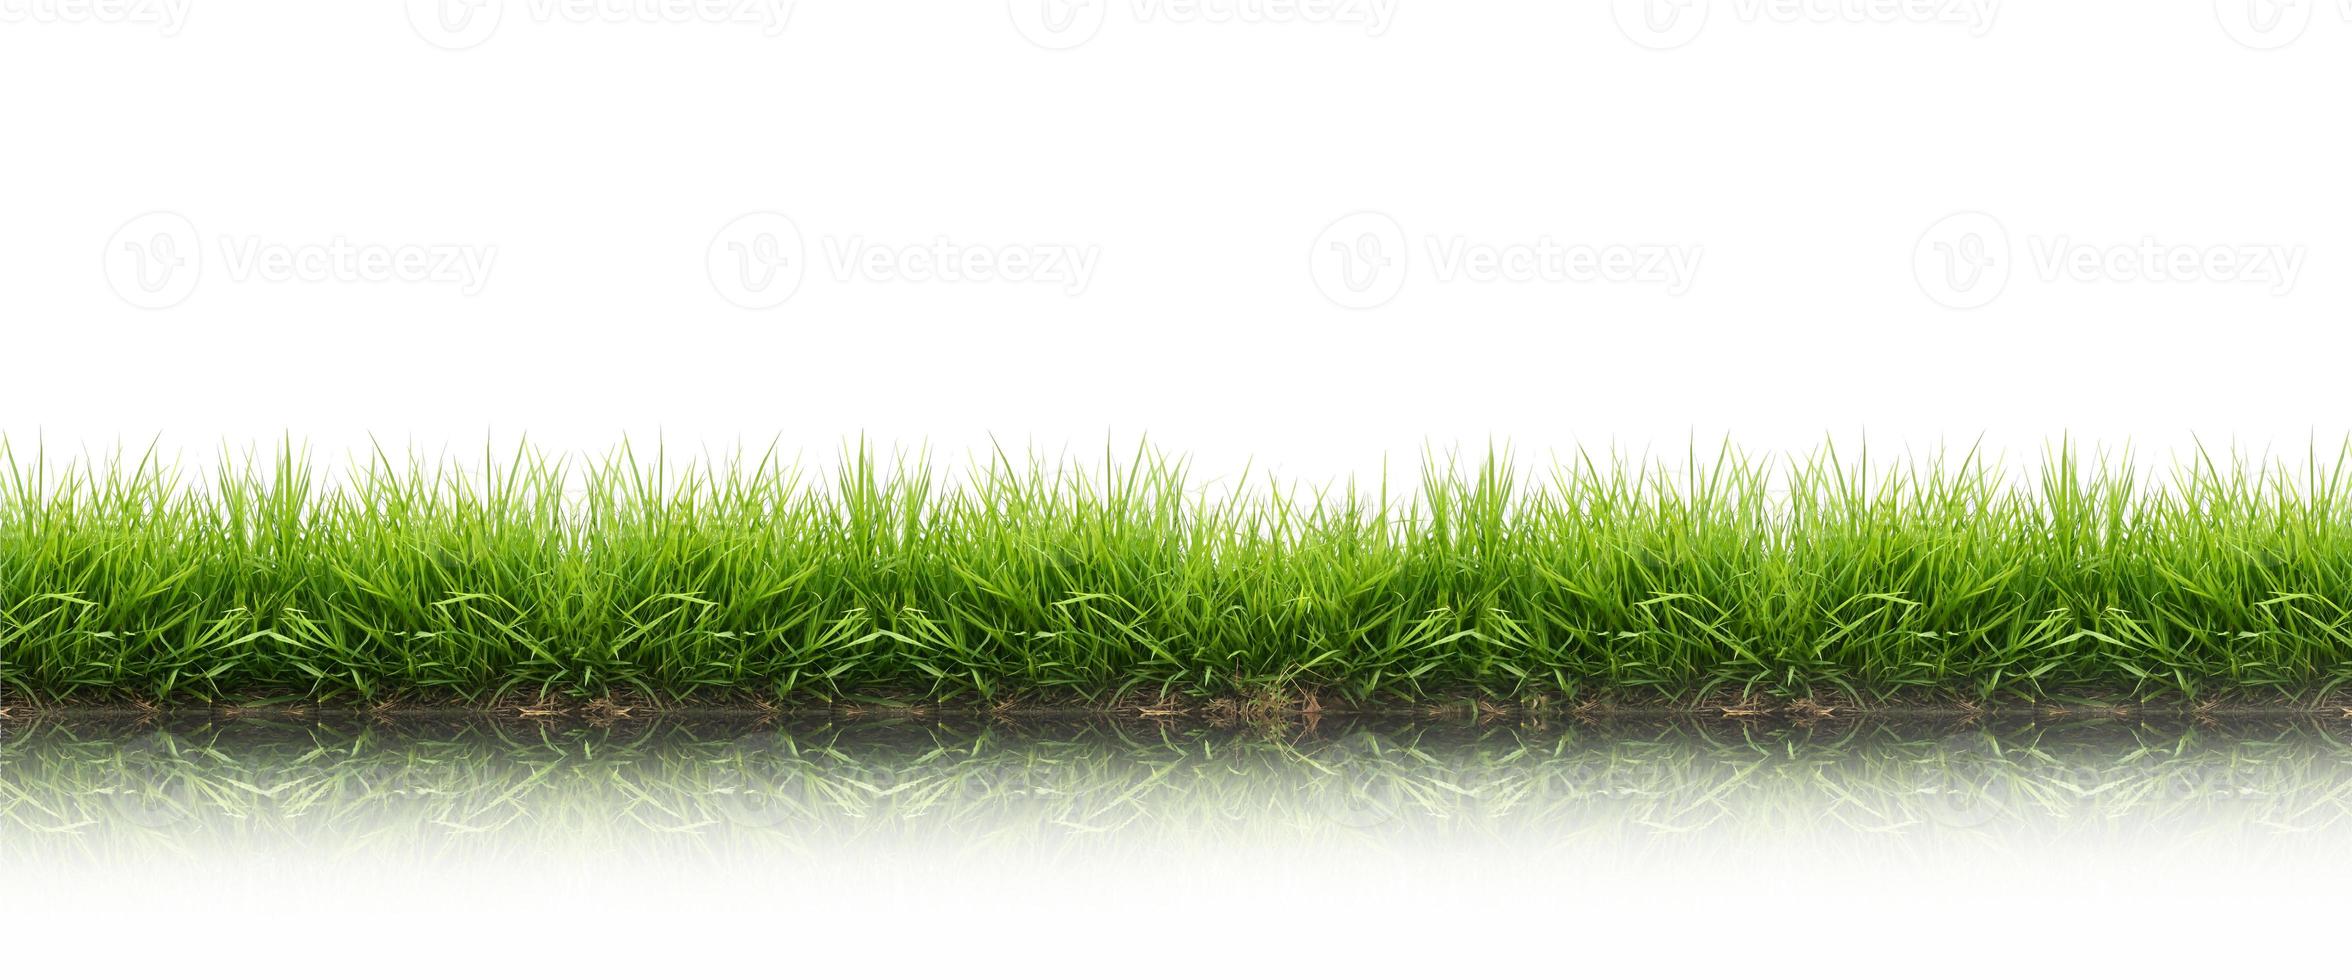 hierba verde de primavera fresca aislada foto